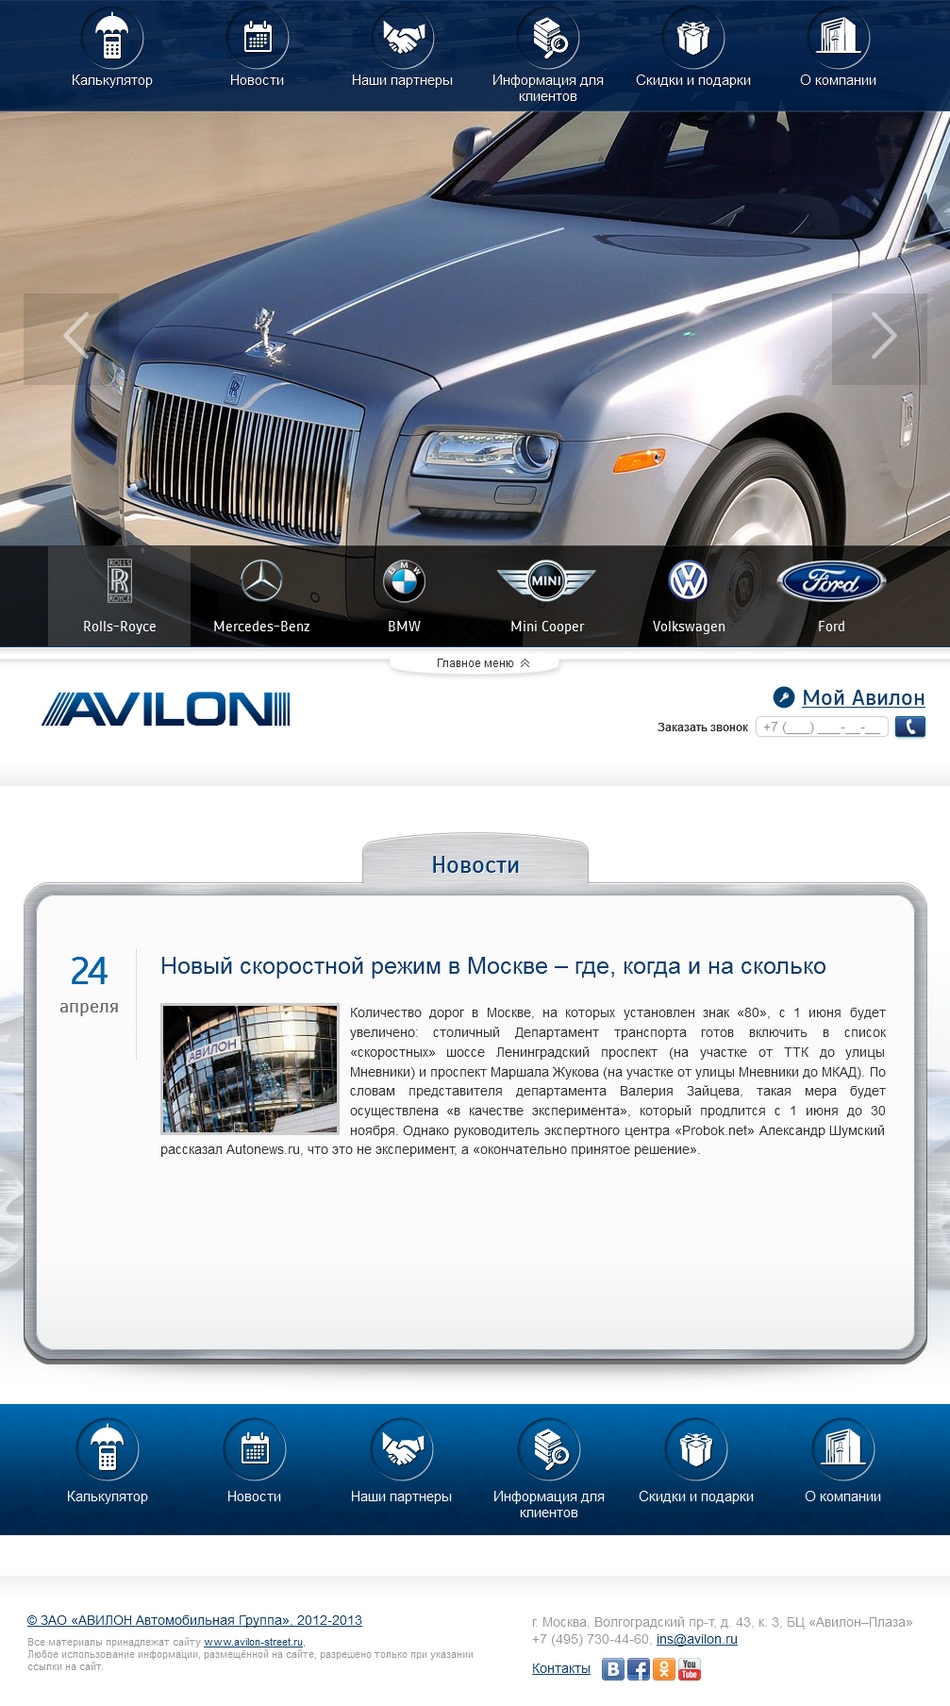 аvilon - автострахование транспорта